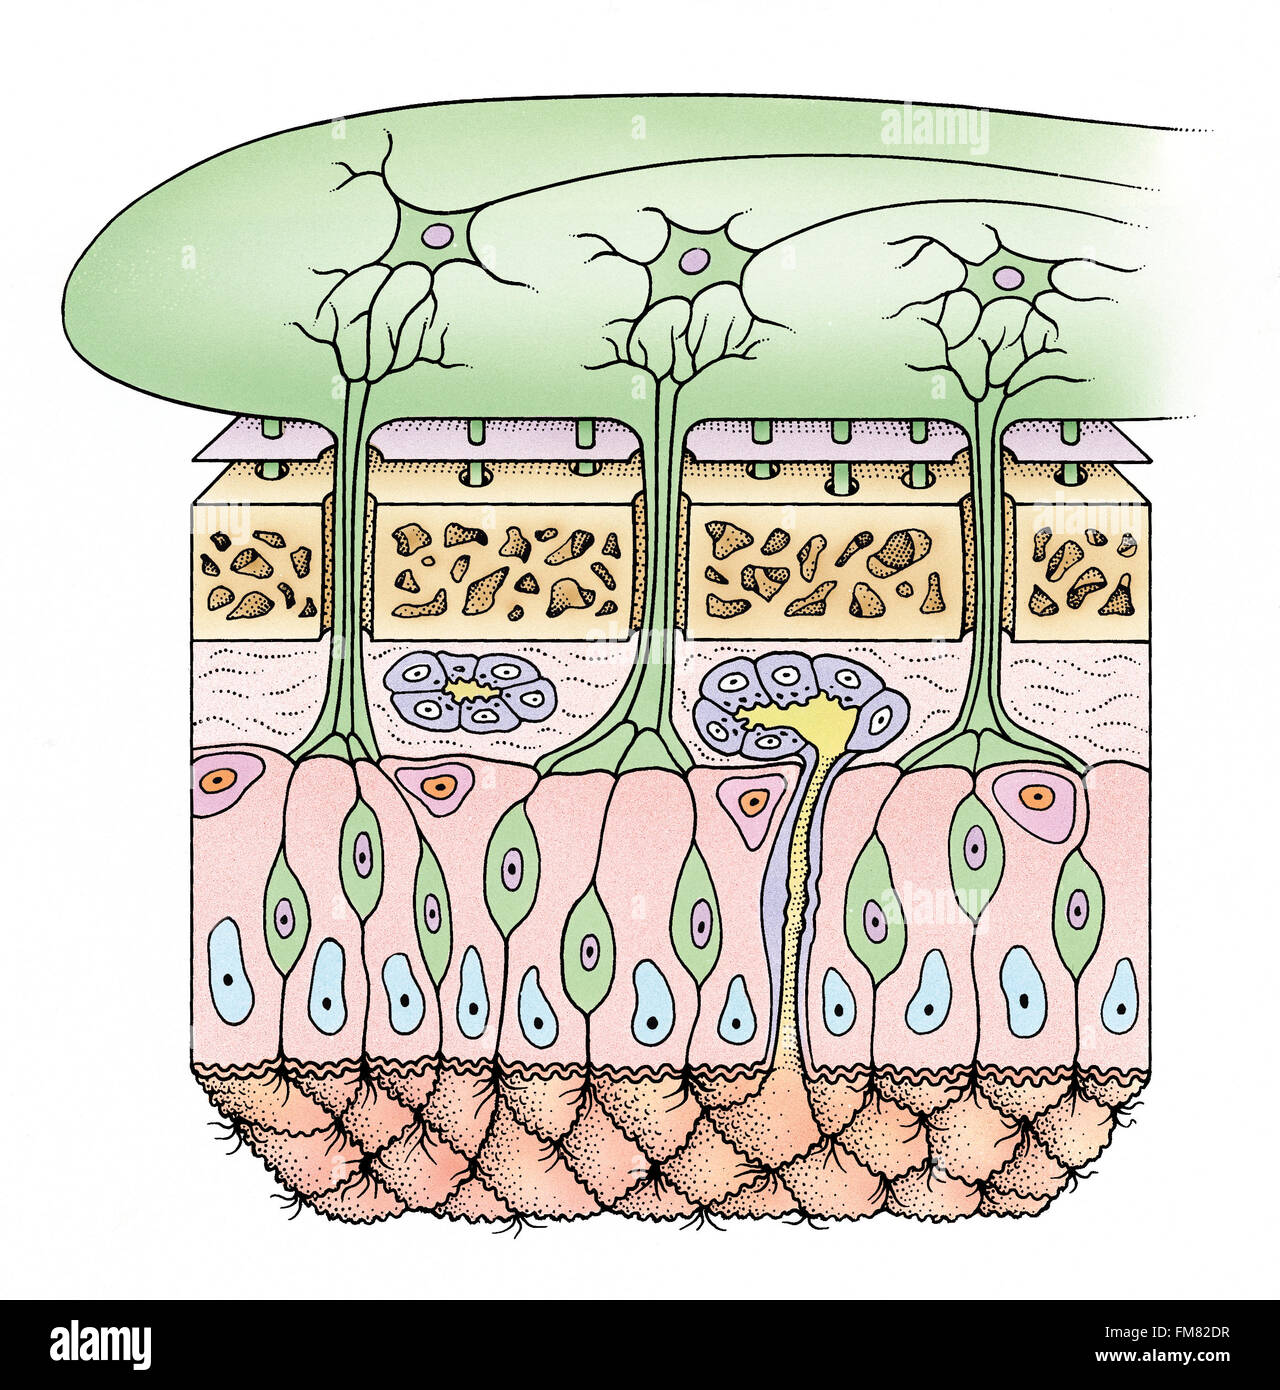 Diagrama de células en la nariz que procesa el olfato, diferentes tipos celulares resaltada. Foto de stock